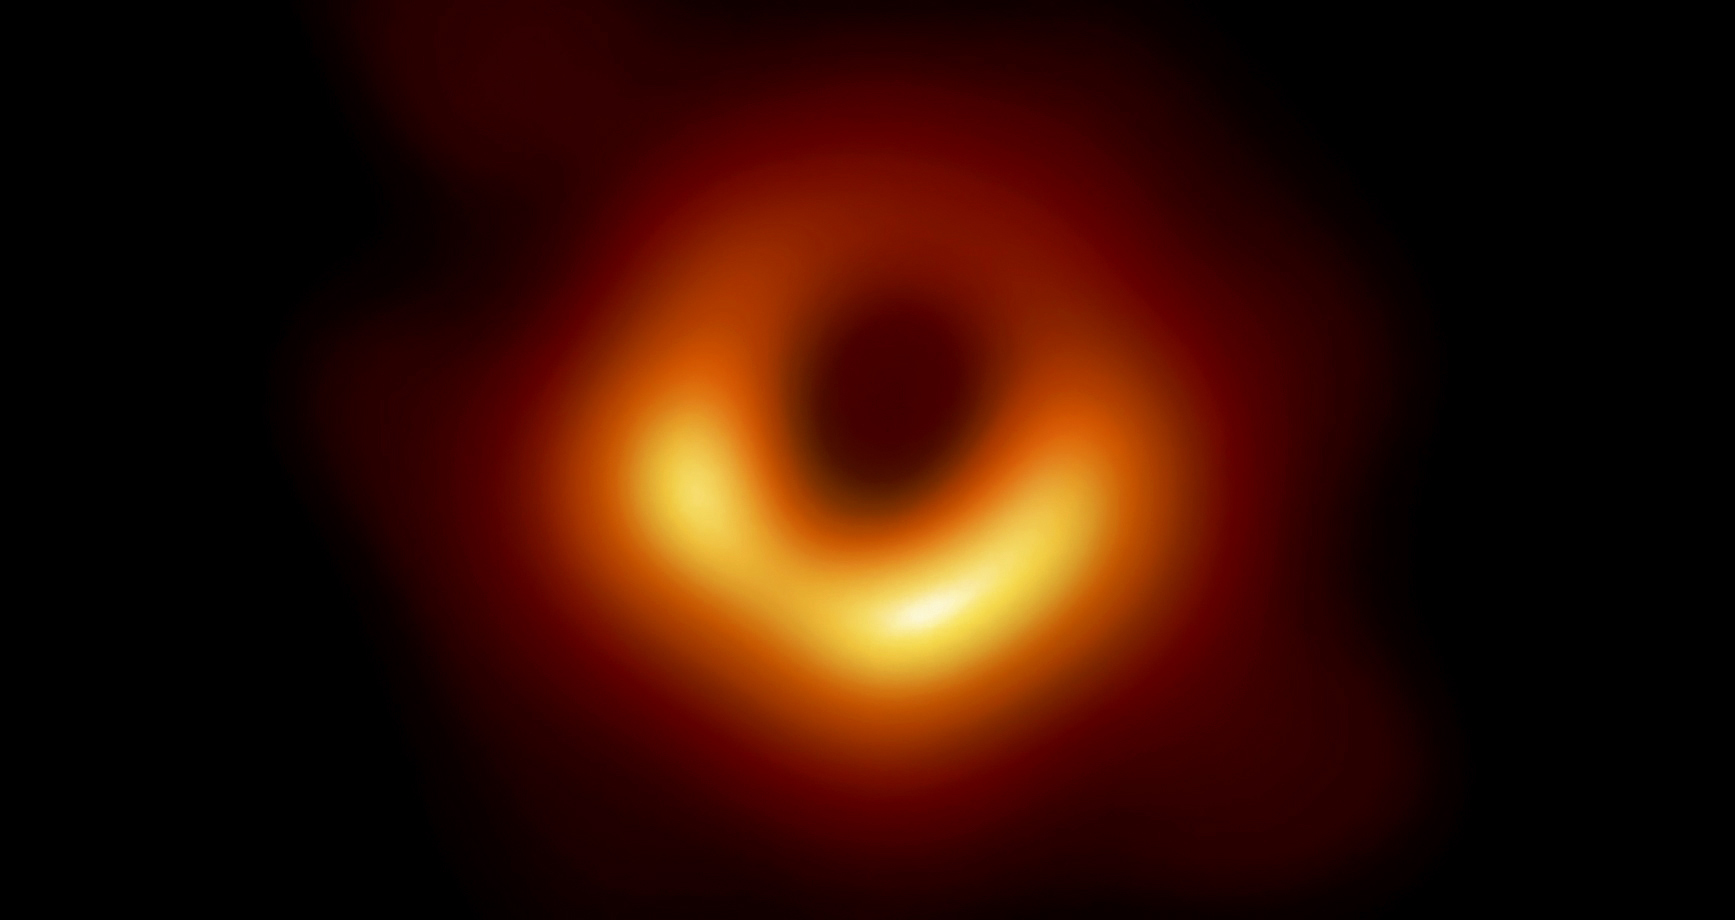 Primera fotografa de un agujero negro, obtenida en 2019.